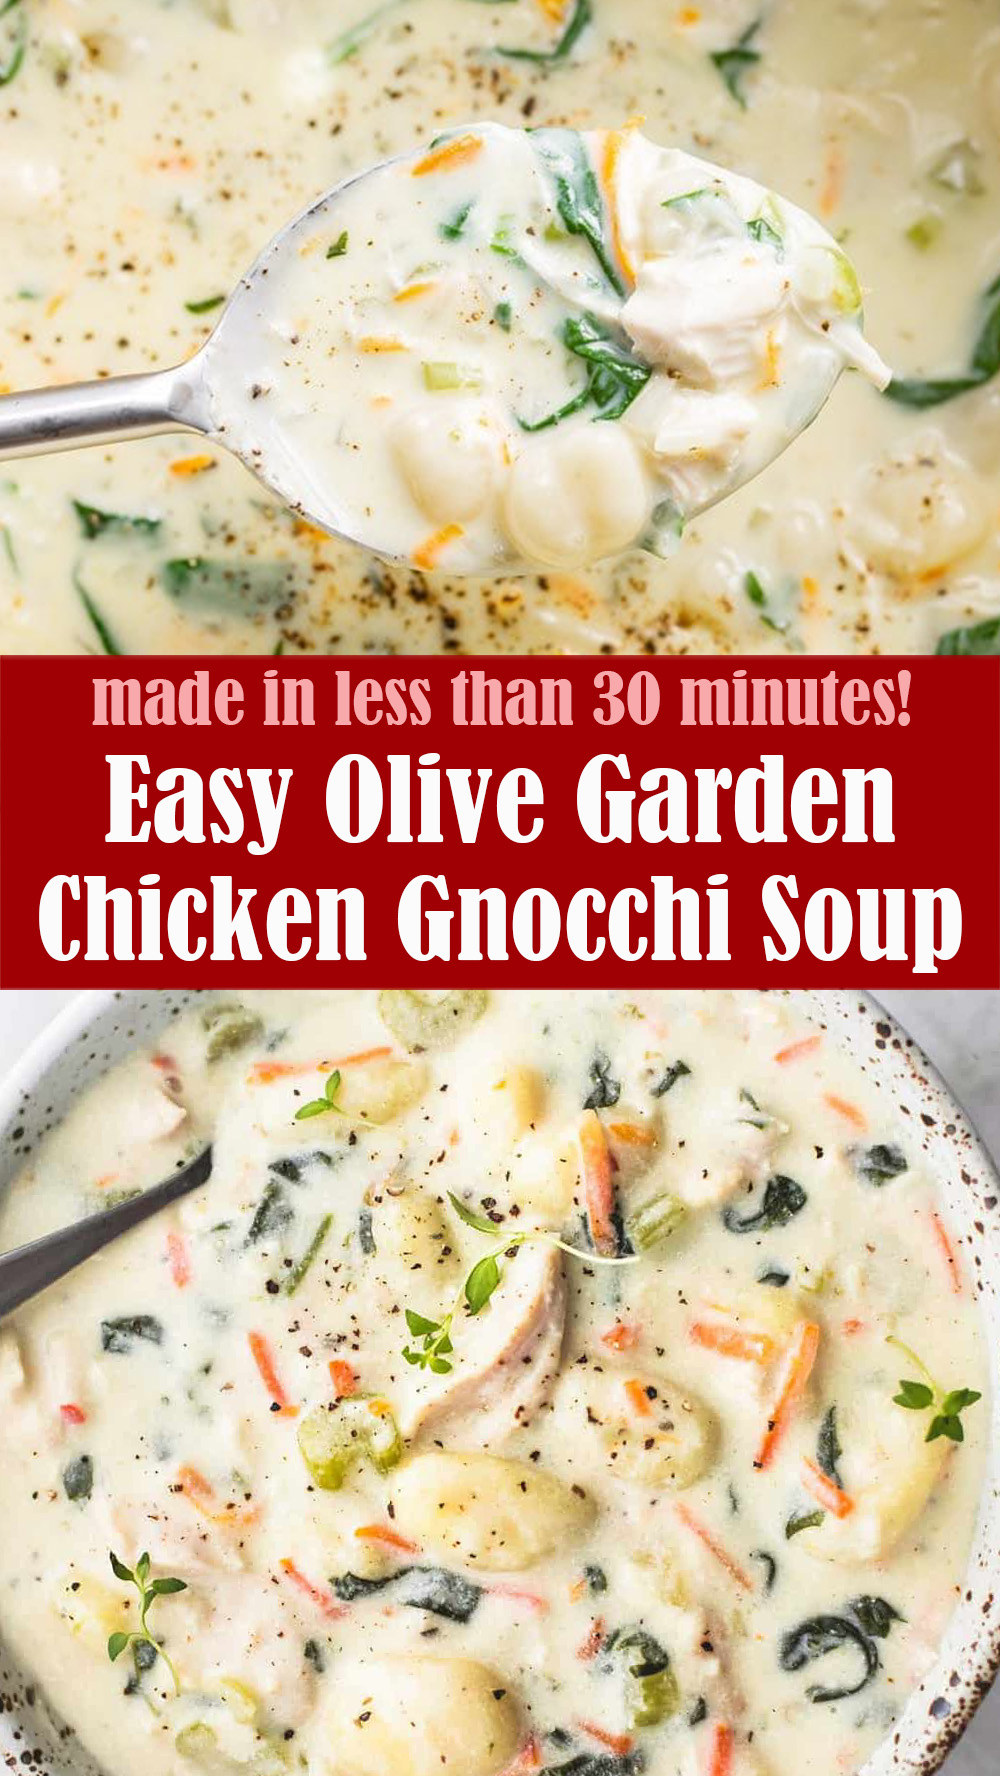 Easy Olive Garden Chicken Gnocchi Soup